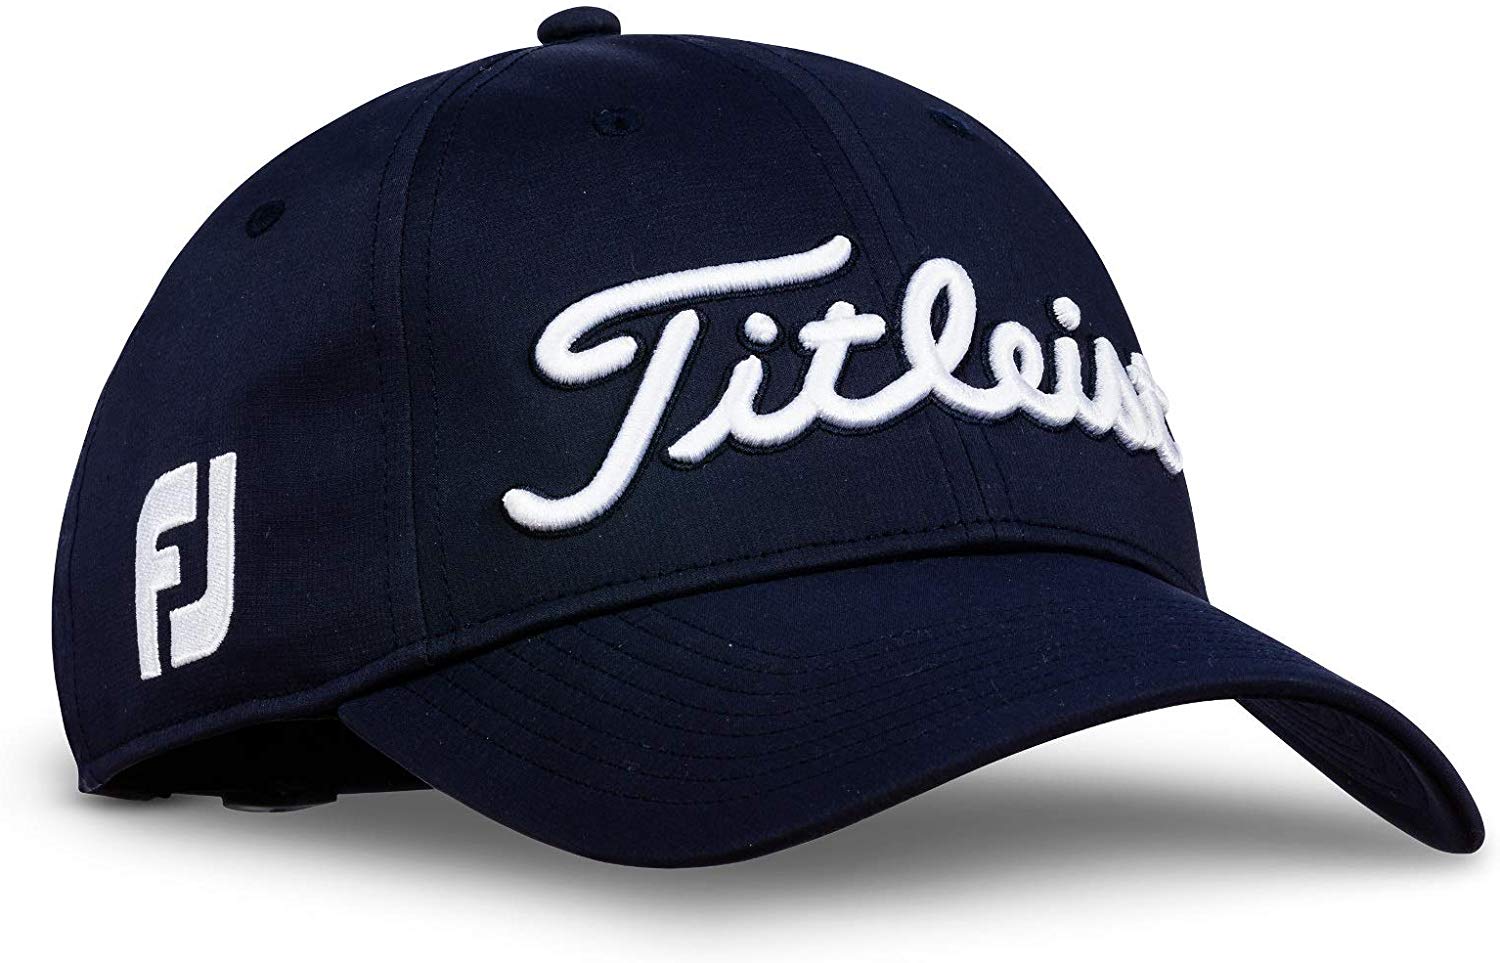 Titleist Mens Standard Tour Performance Golf Caps